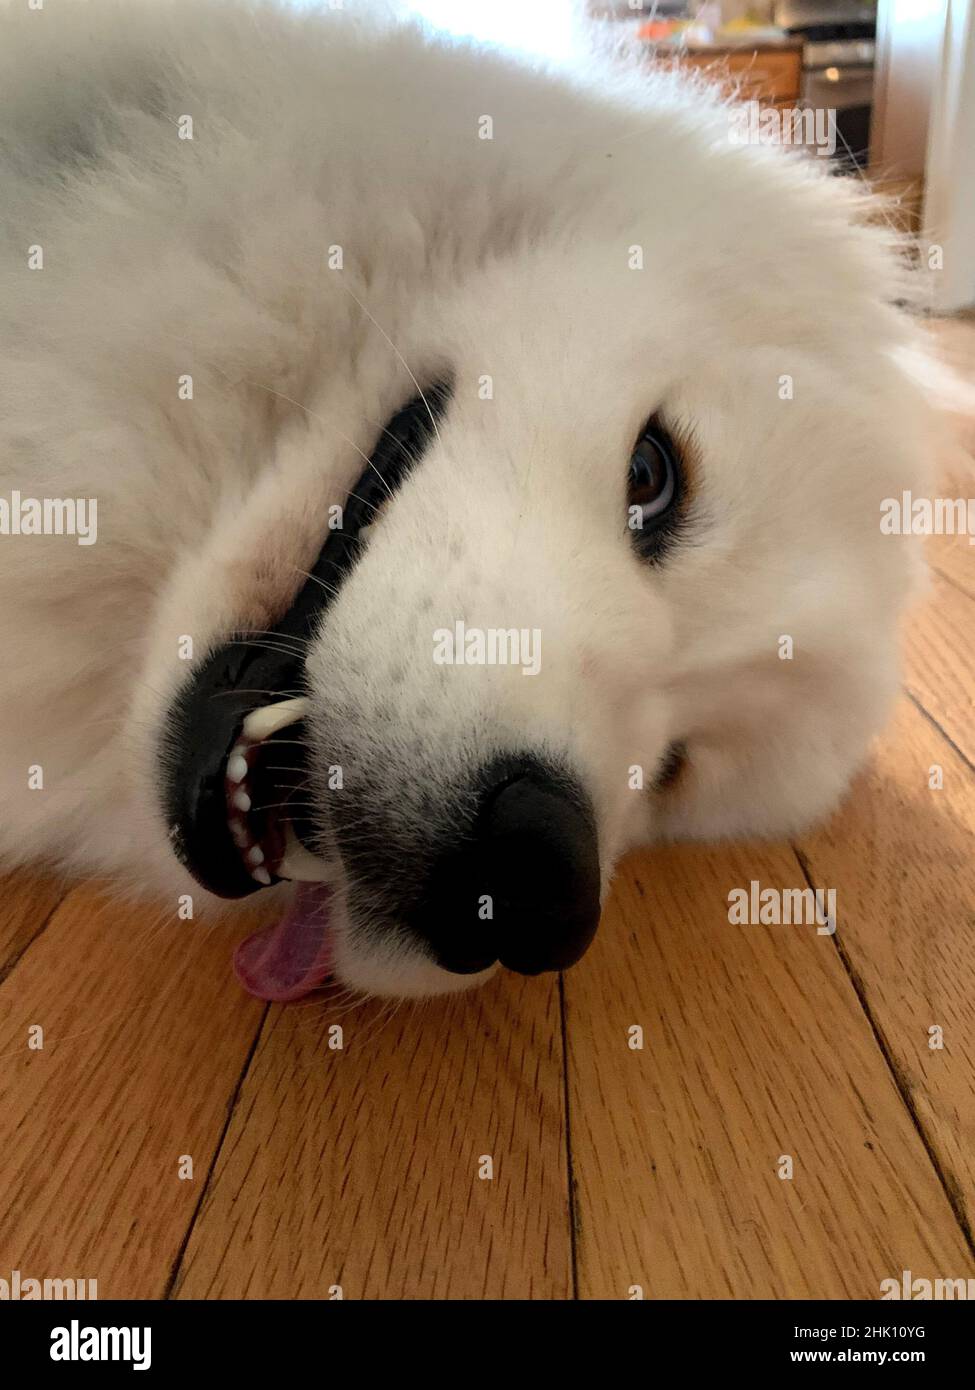 cute samoyed dog close up Stock Photo